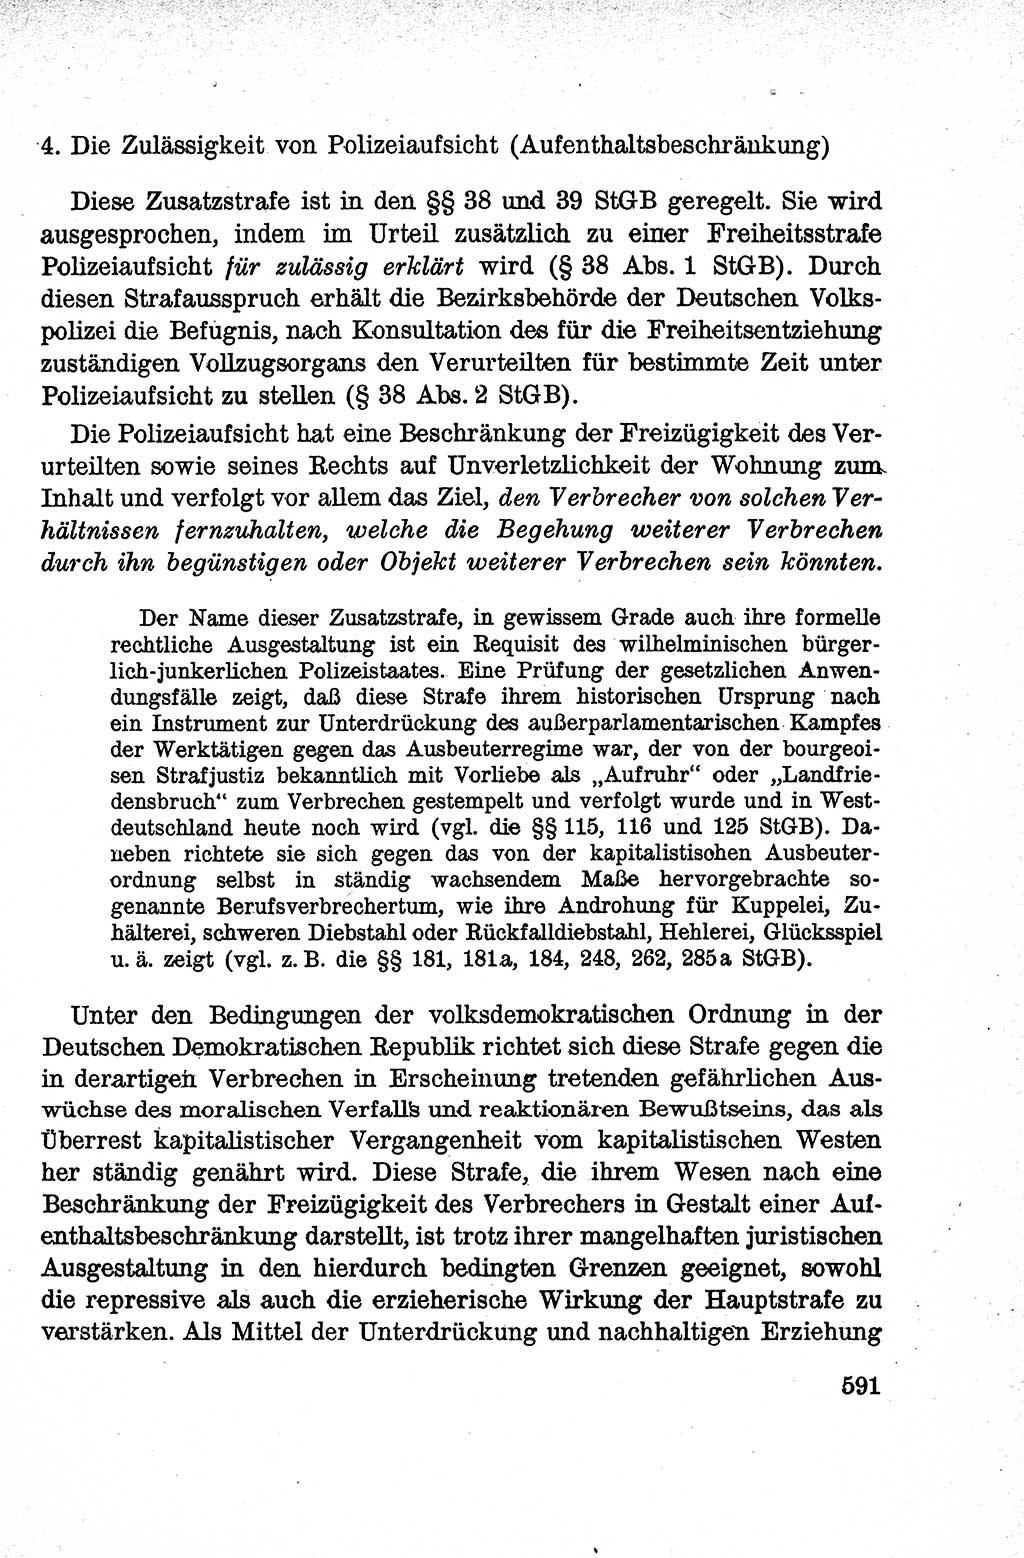 Lehrbuch des Strafrechts der Deutschen Demokratischen Republik (DDR), Allgemeiner Teil 1959, Seite 591 (Lb. Strafr. DDR AT 1959, S. 591)